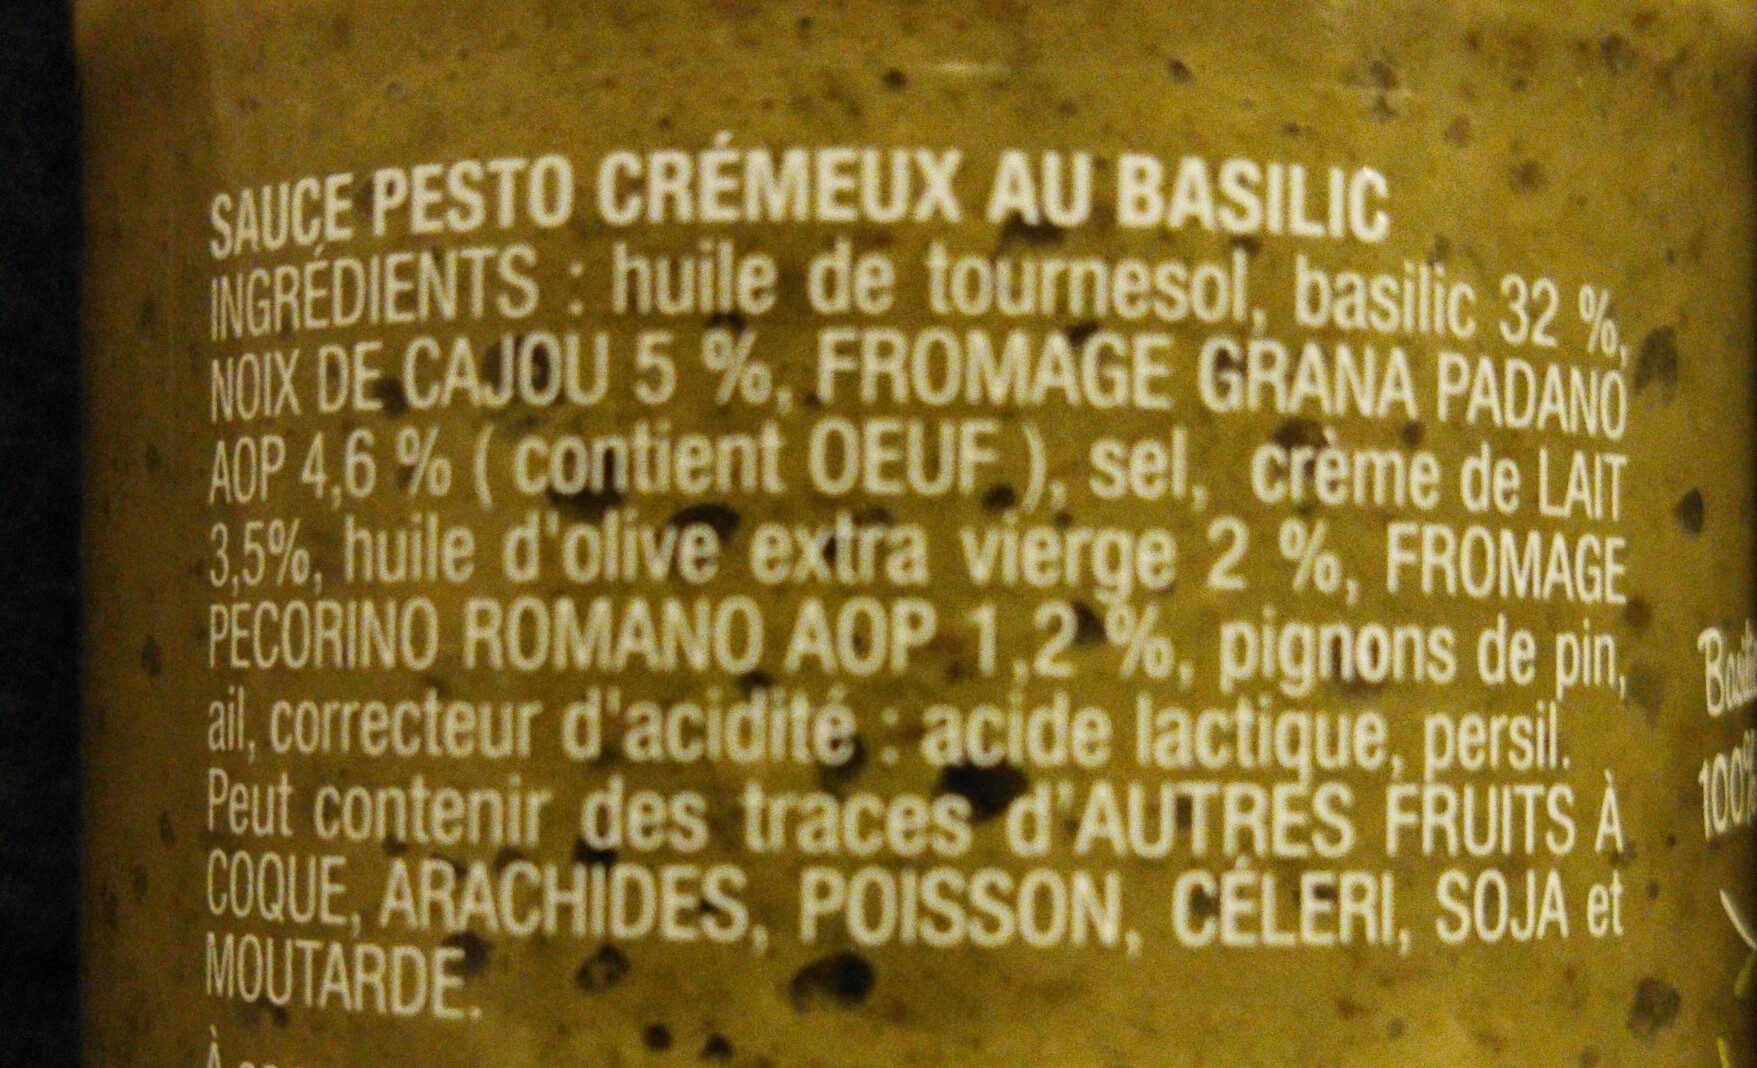 Pesto alla Genovese crémeux - Ingredients - fr